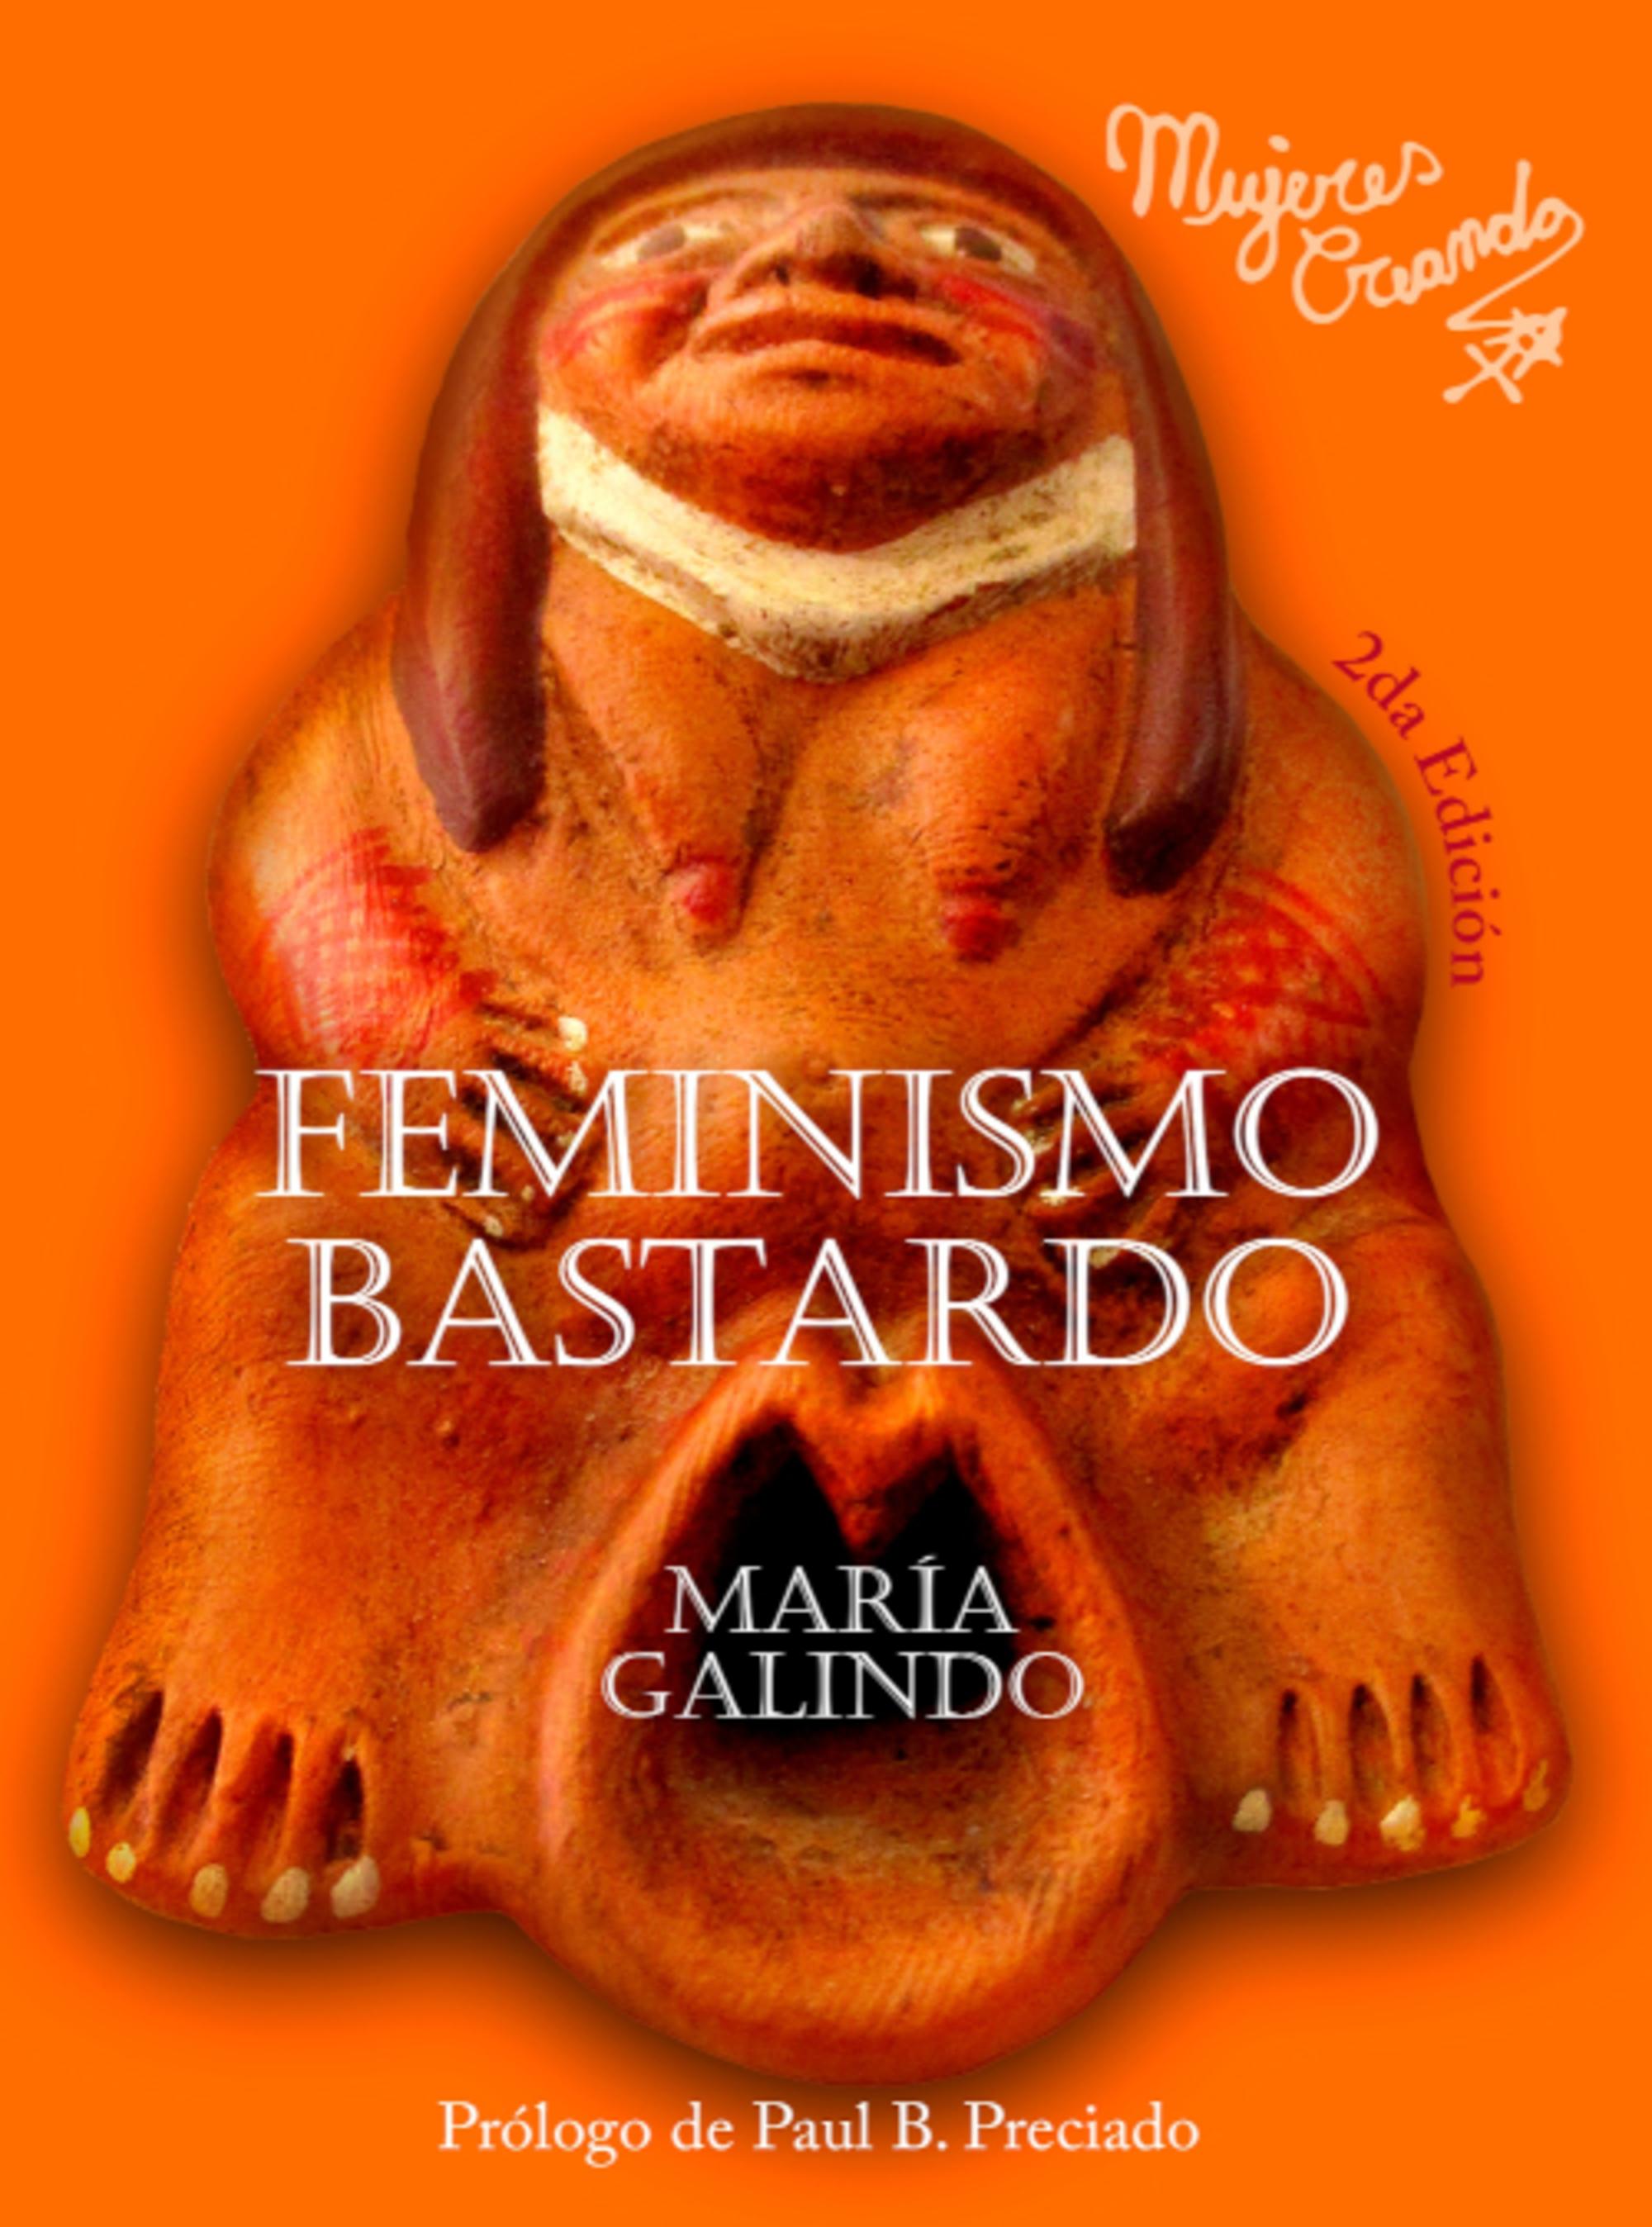 María Galindo. Feminismo bastardo 2